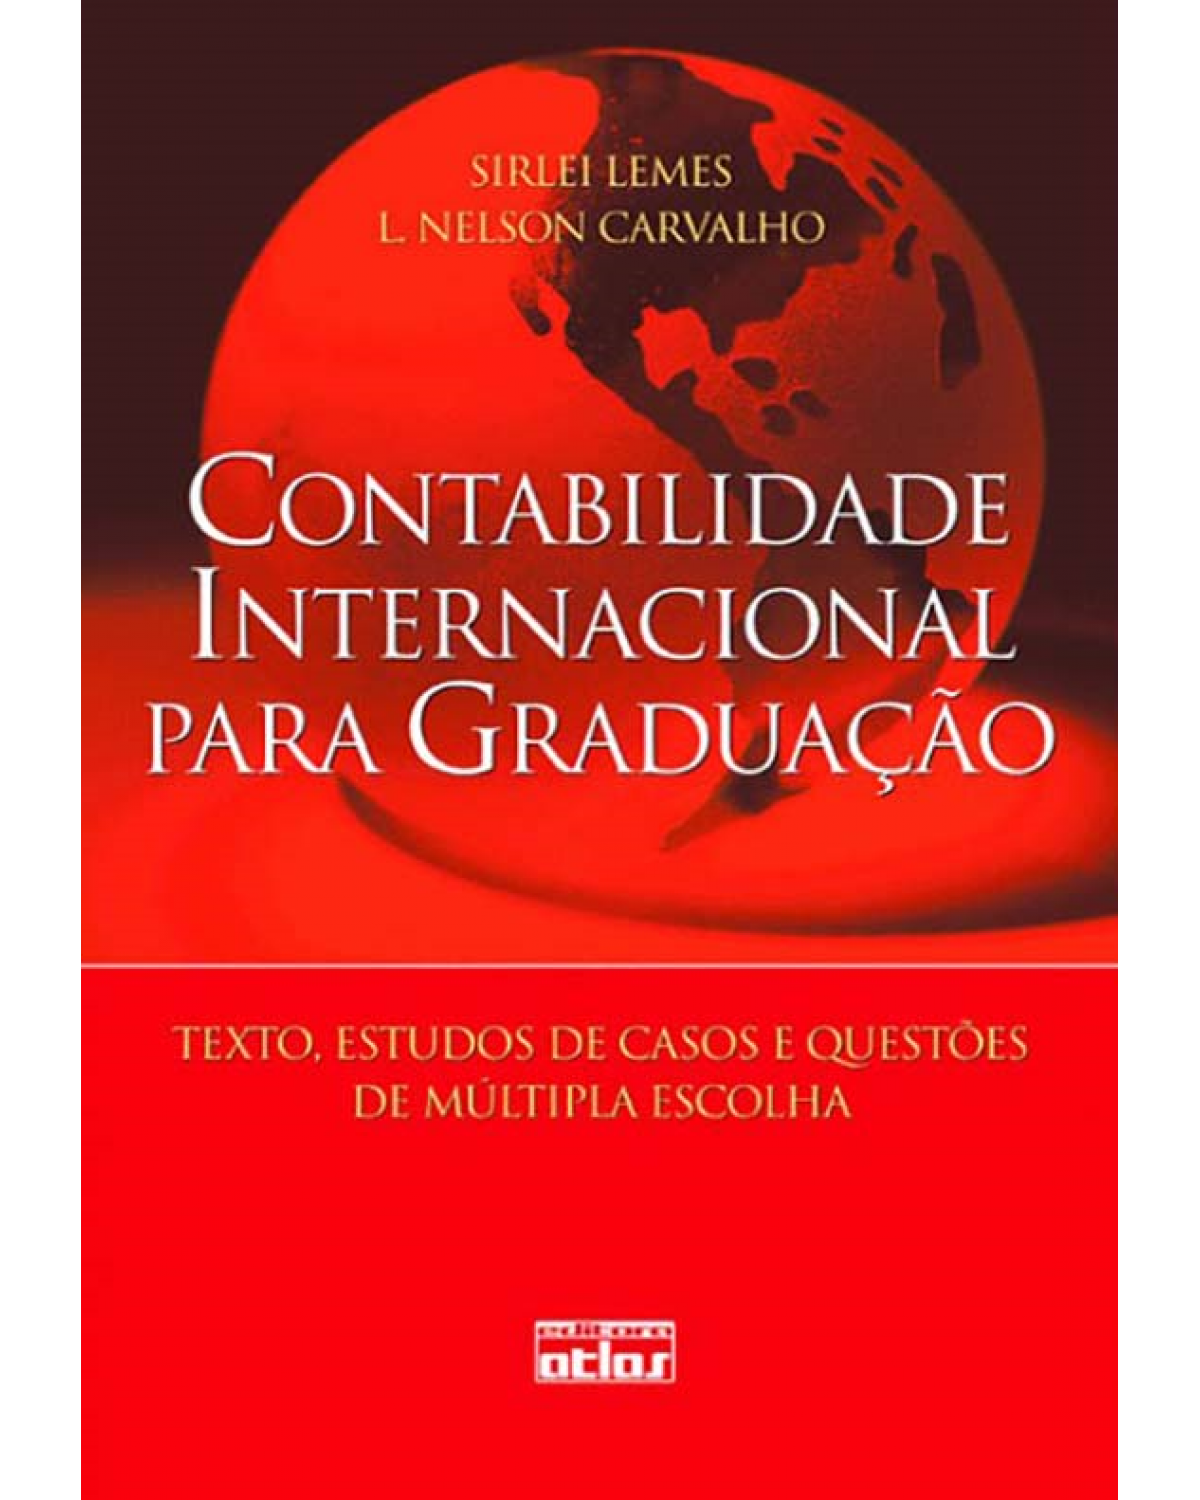 Contabilidade internacional para graduação - Textos, estudos de casos e questões de múltipla escolha - 1ª Edição | 2010